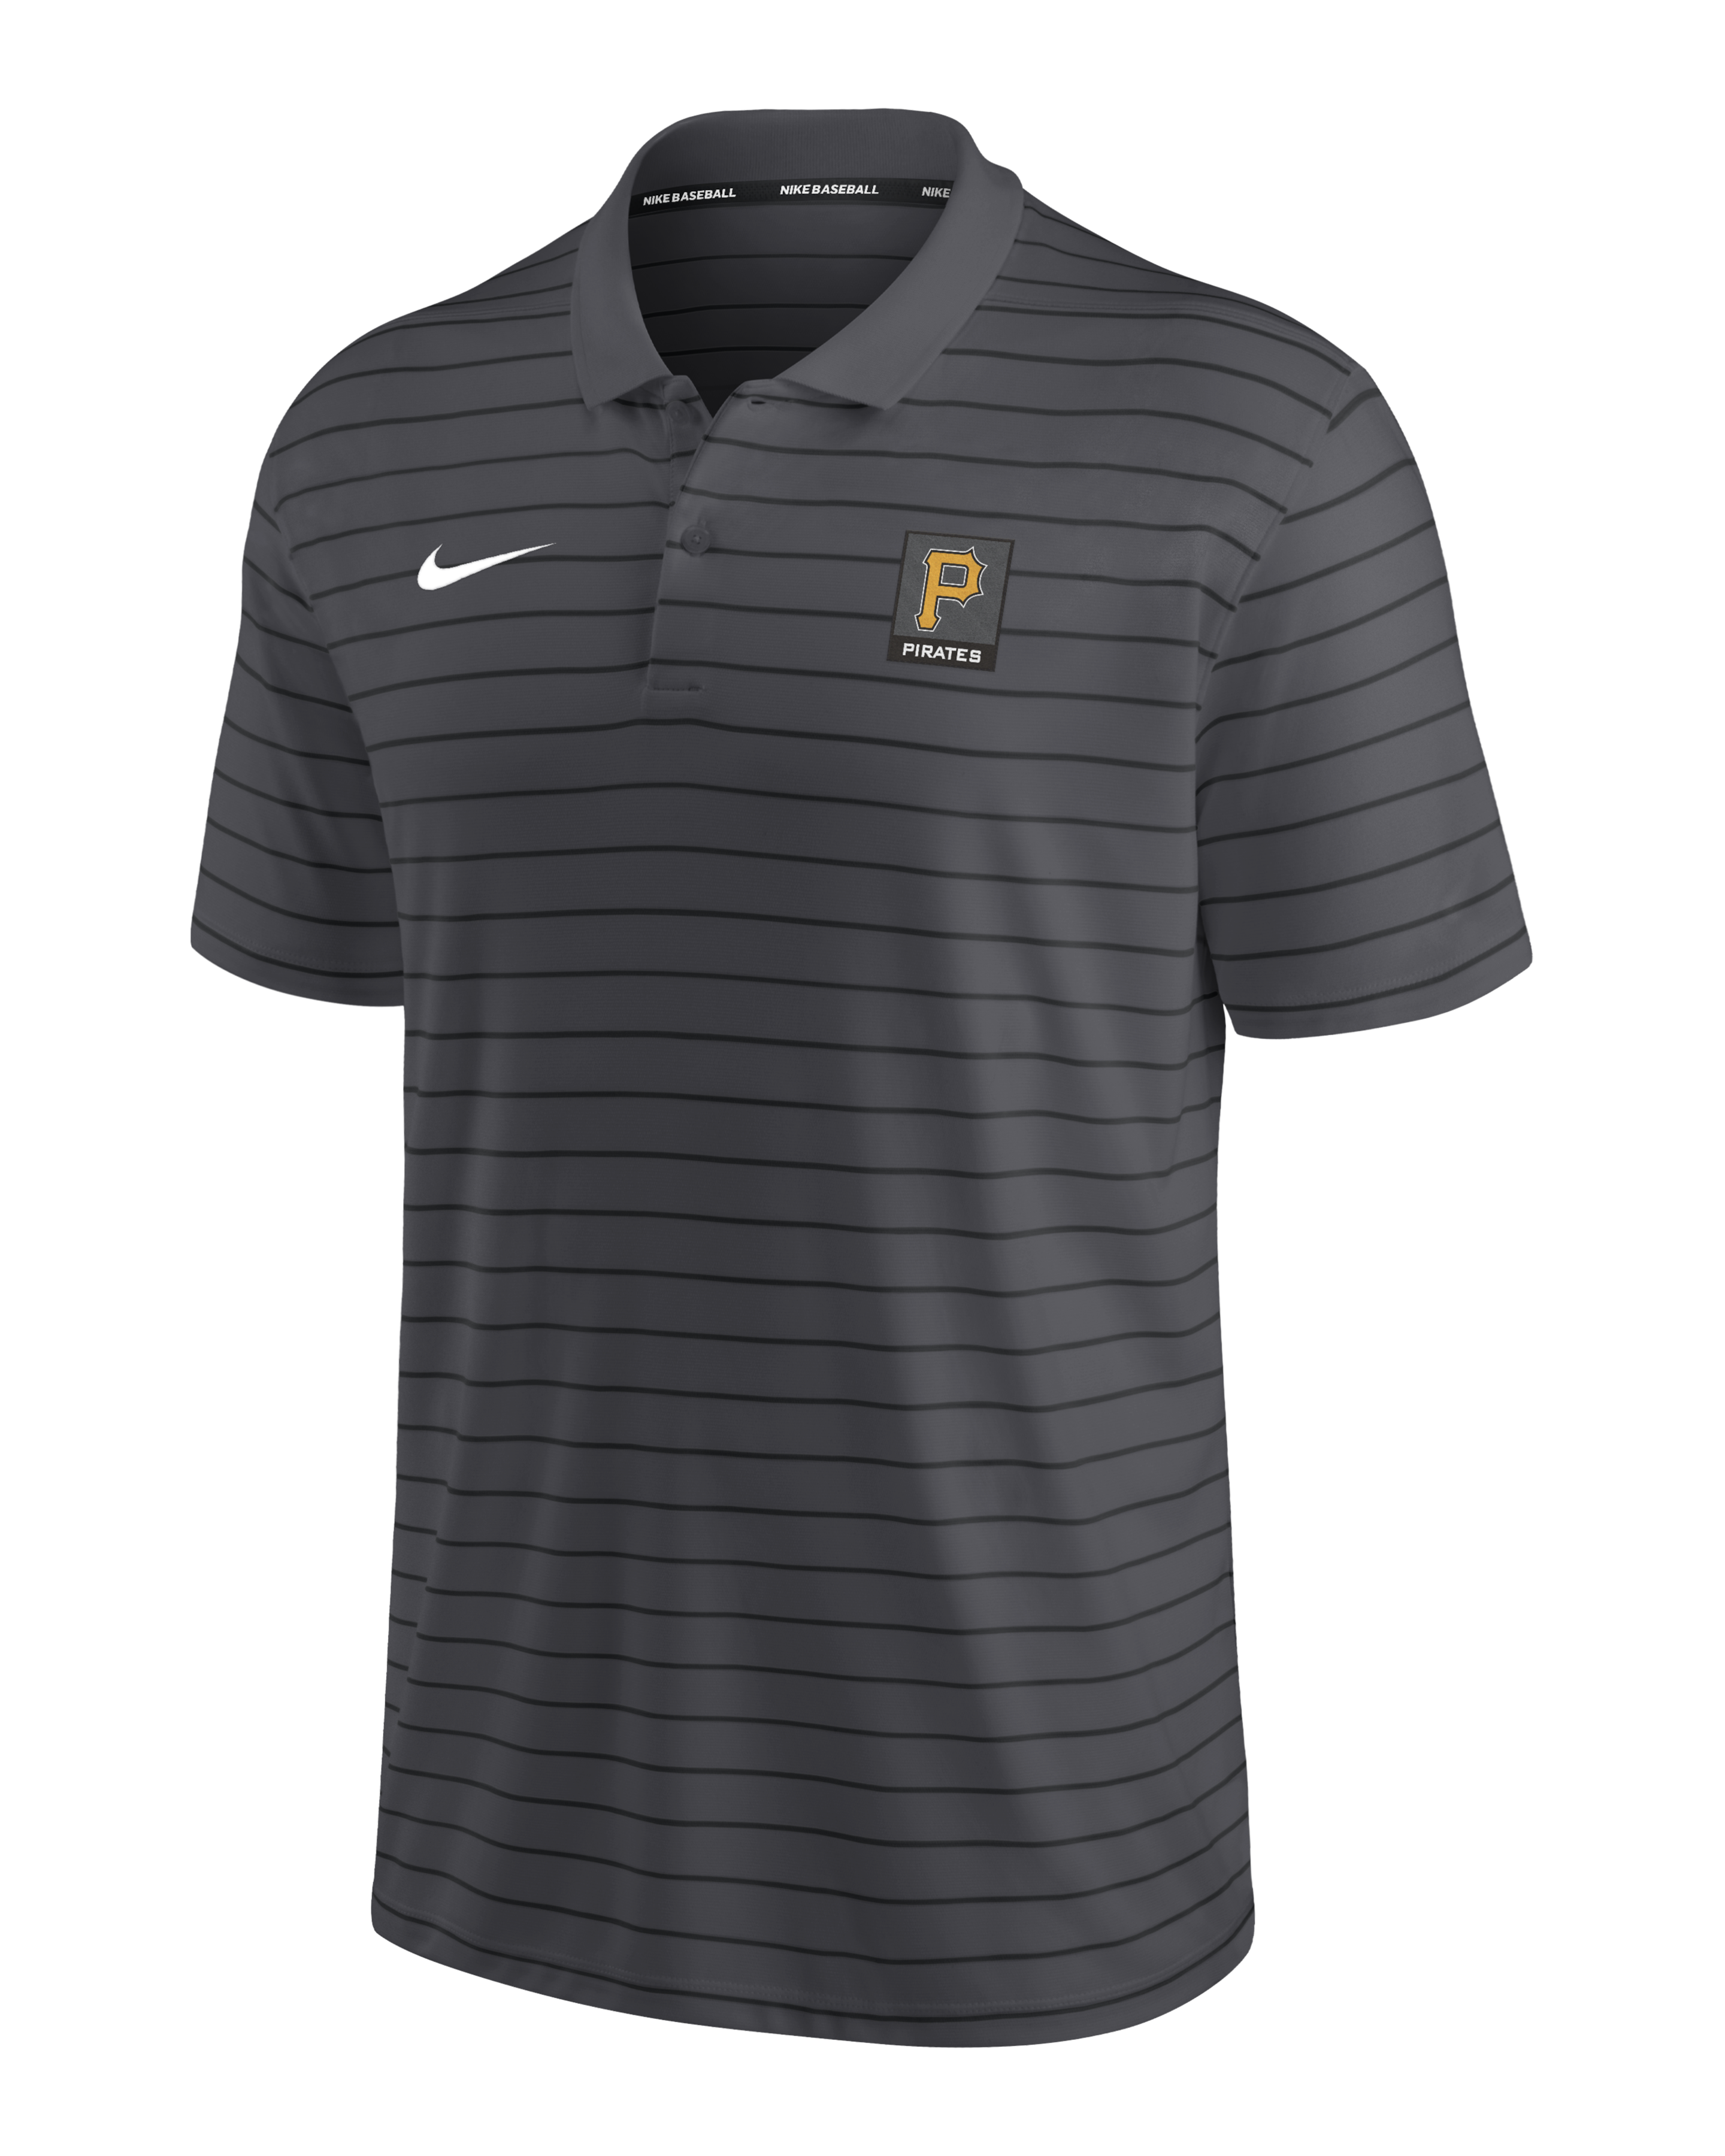 San Francisco Giants Nike Dri-FIT Stripe Polo - Black